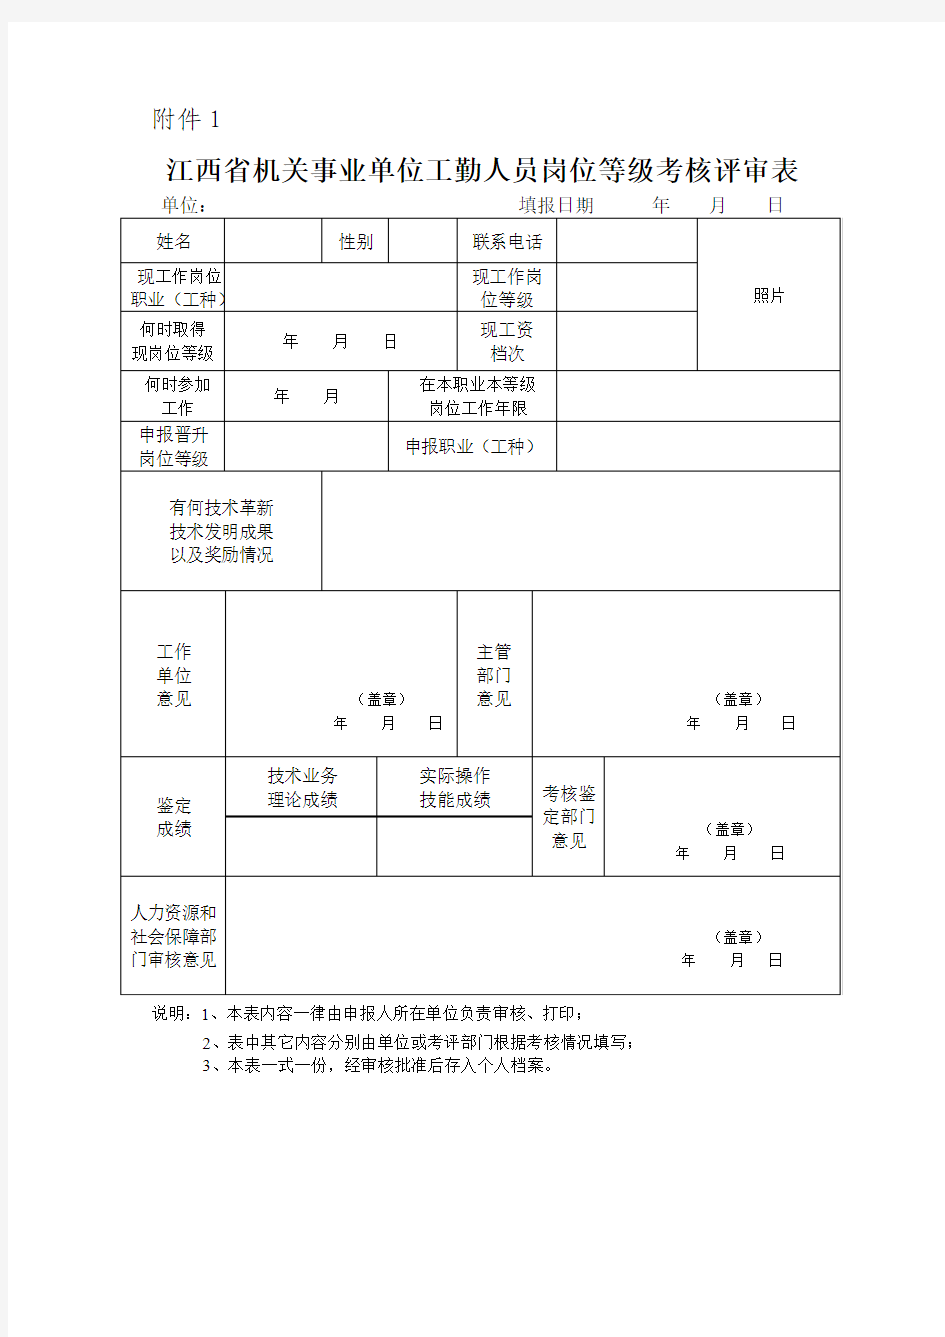 江西省机关事业单位工勤人员岗位等级考核评审表